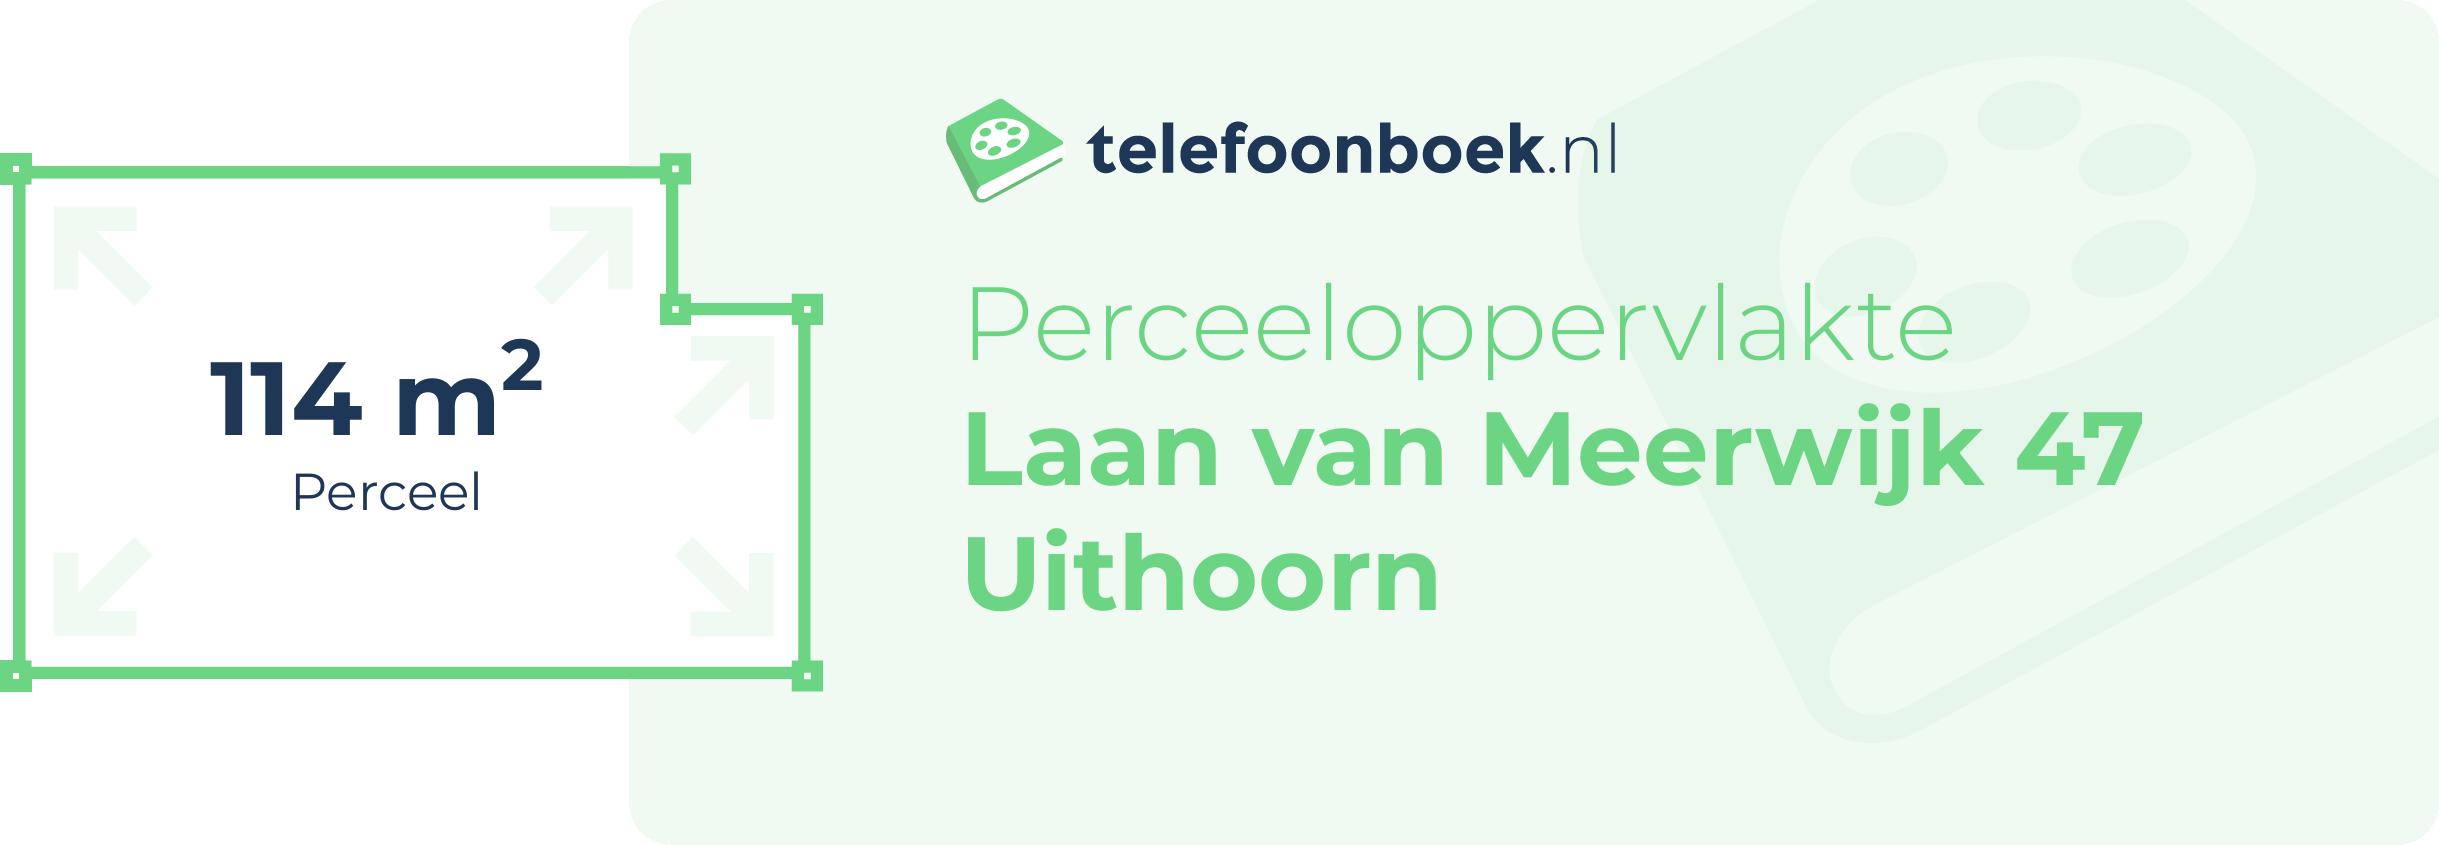 Perceeloppervlakte Laan Van Meerwijk 47 Uithoorn